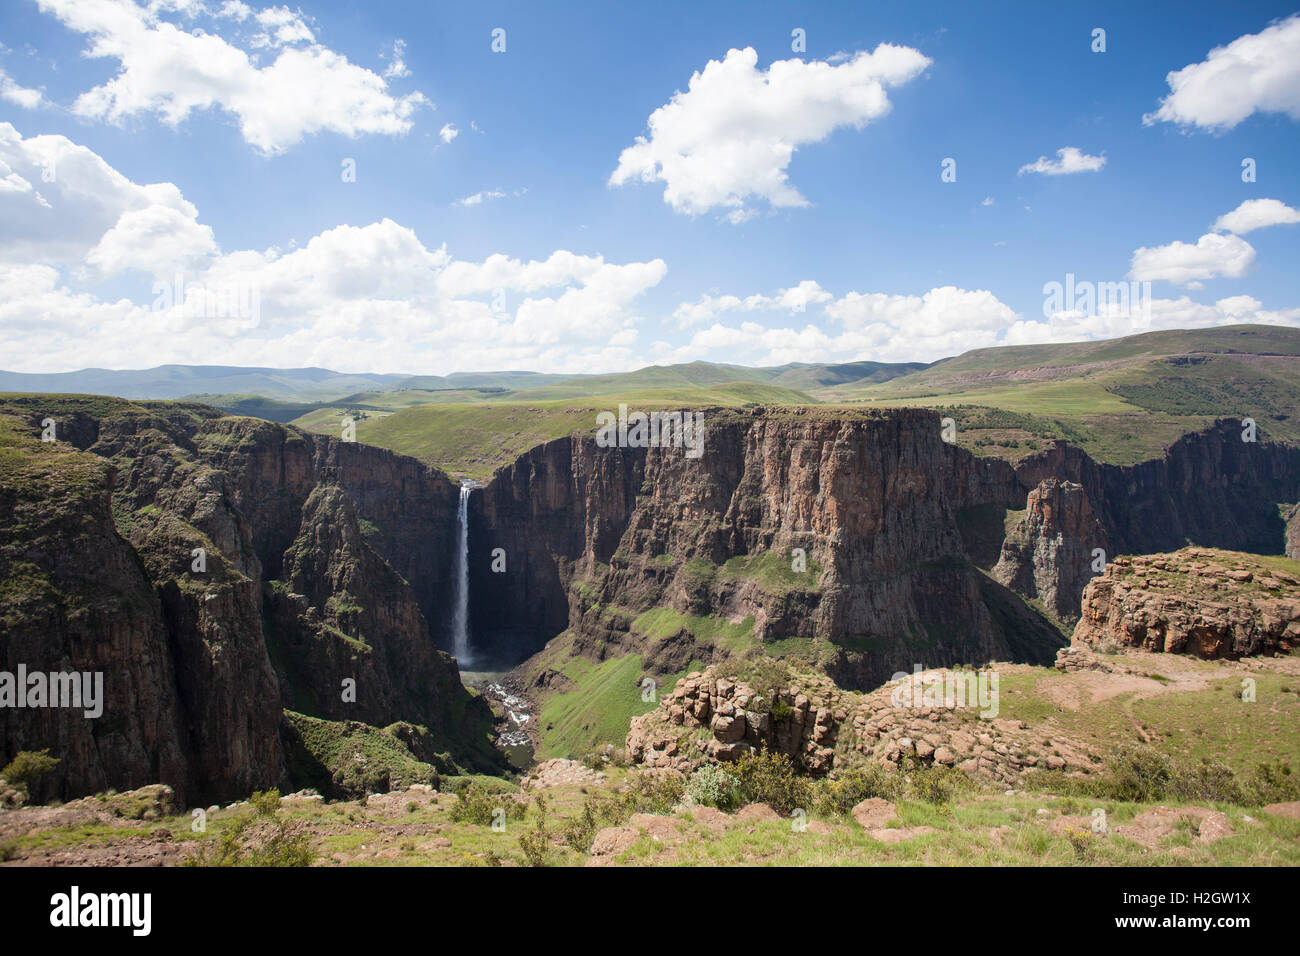 Waterfall, Maletsunyane Falls, near Semonkong, Lesotho Stock Photo